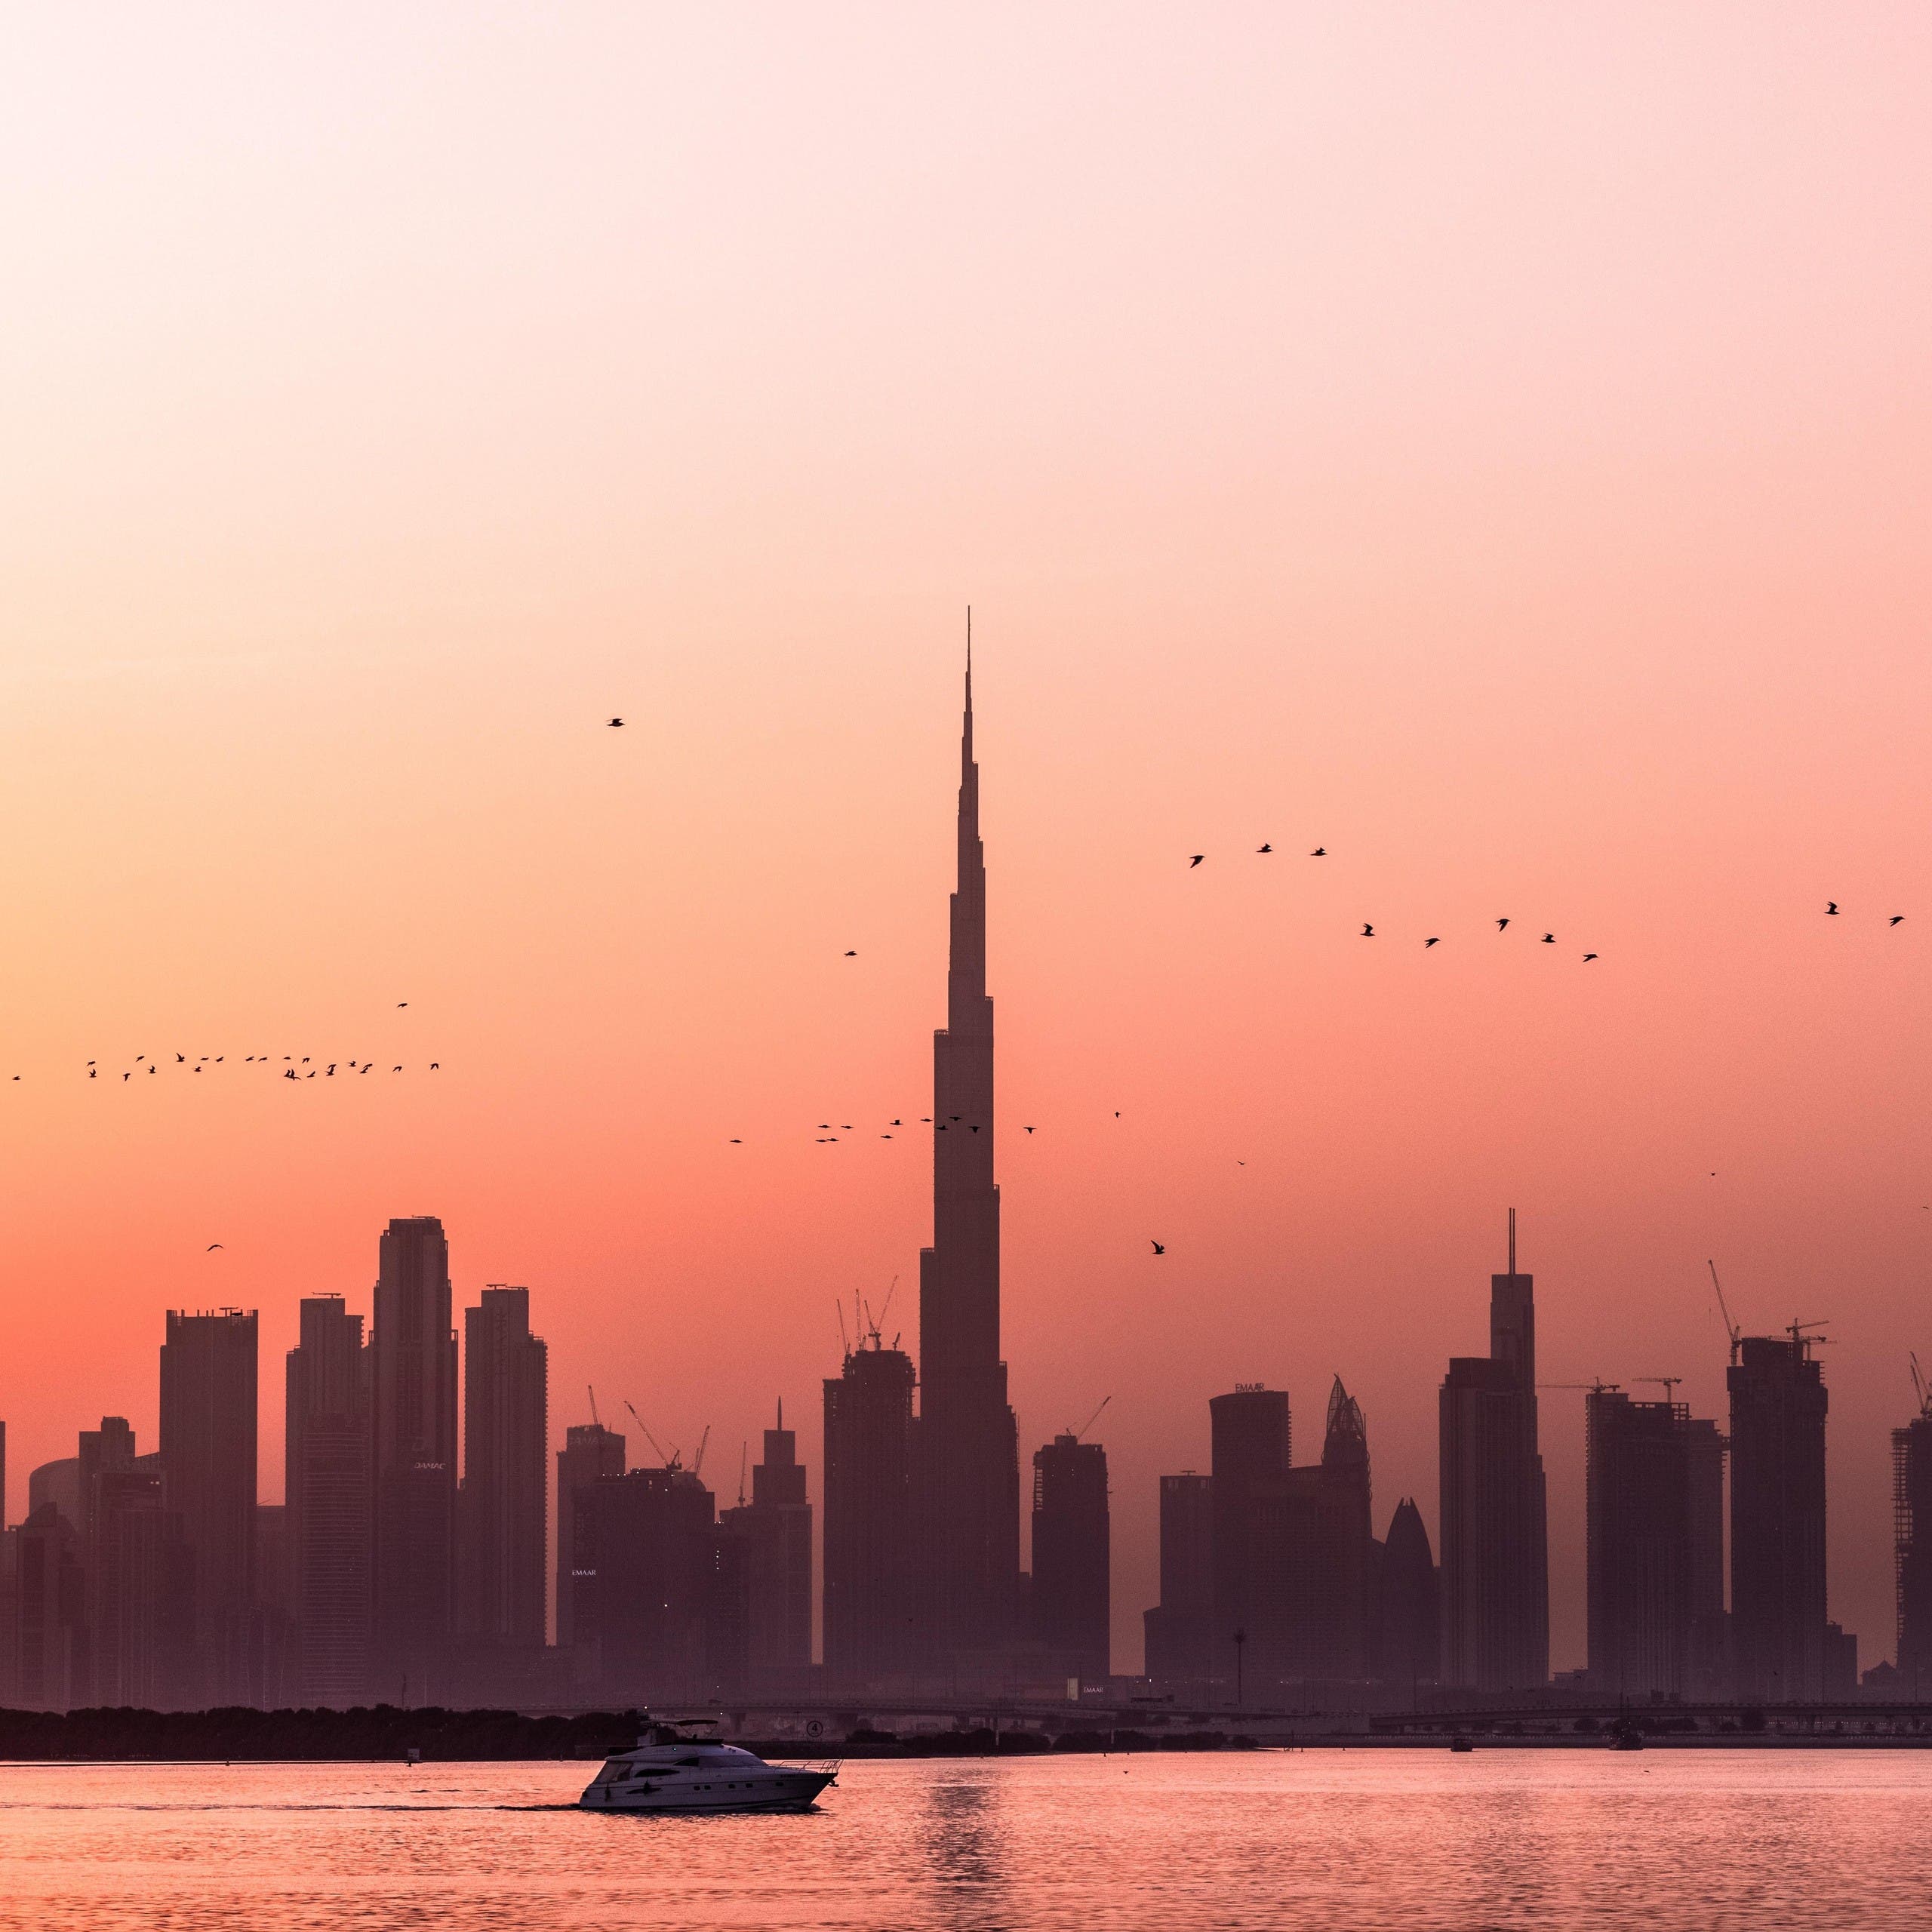 Dubai retains ranking as world’s top FDI destination for tourism